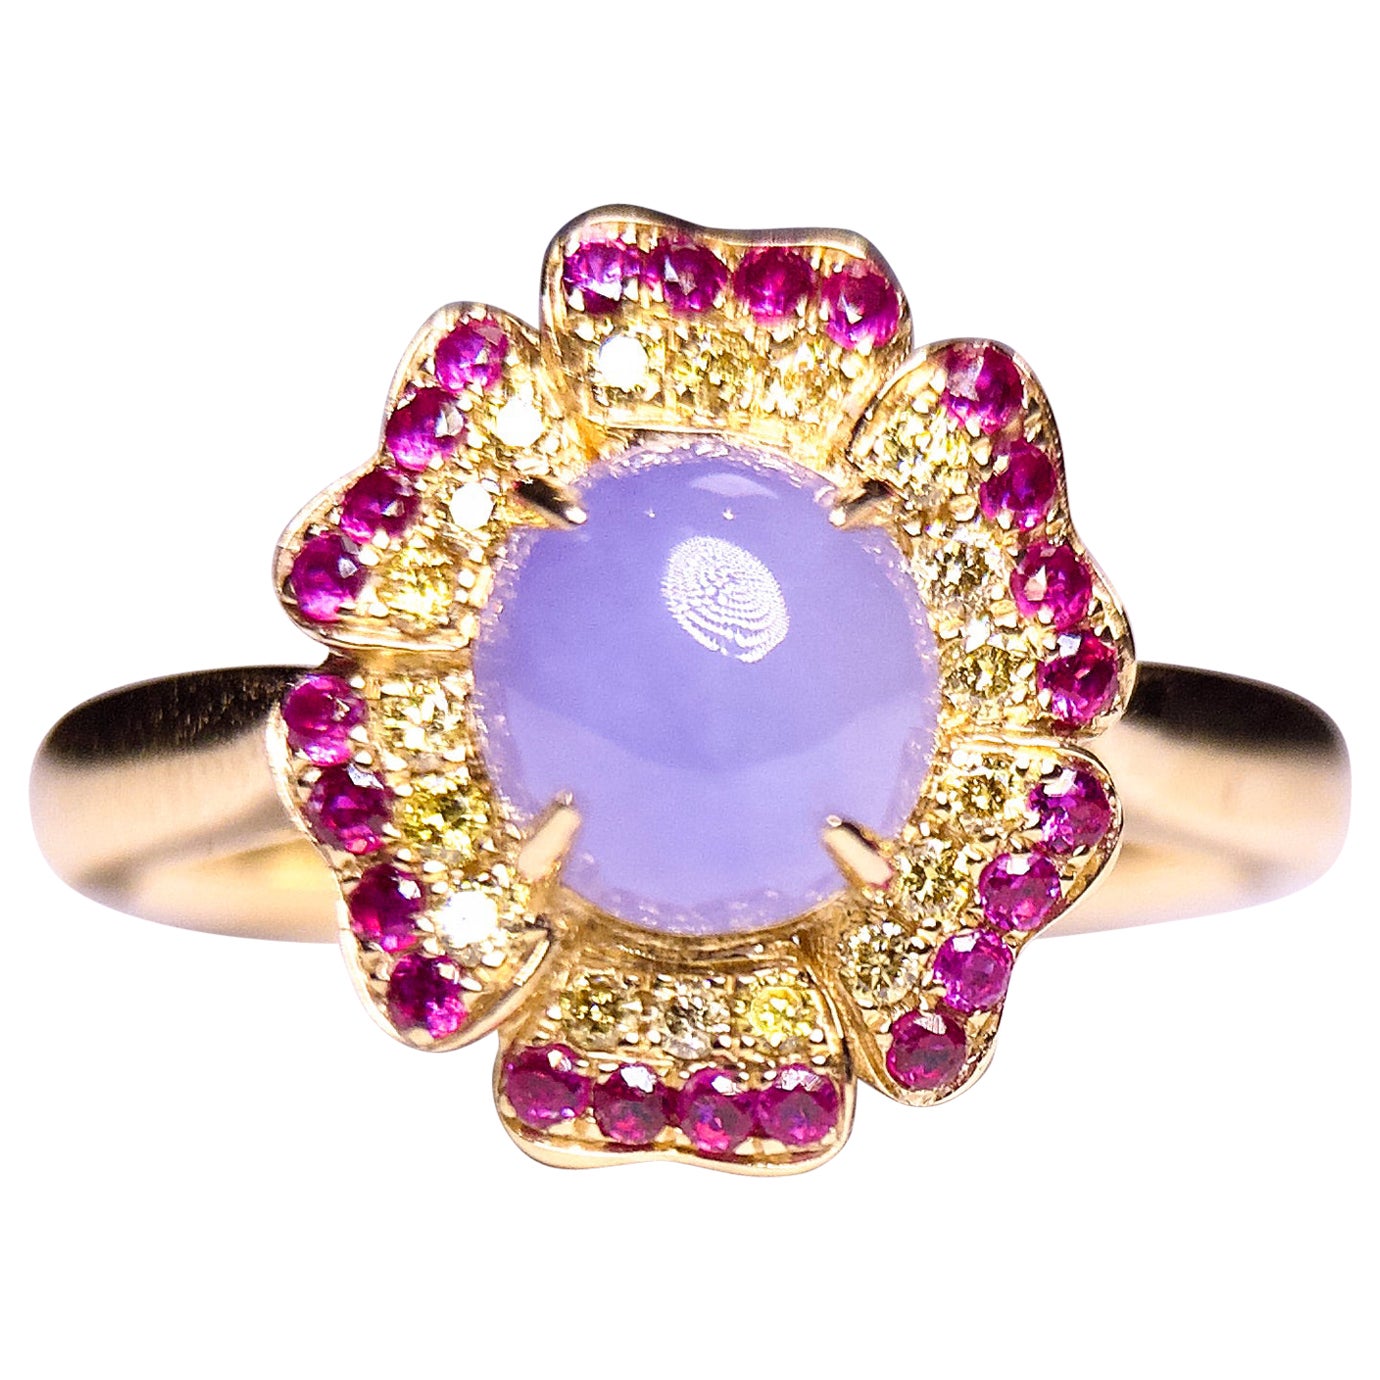 Eostre Typ A Ring aus 18 Karat Gold mit lavendelfarbenem Jadeit, Rubin und Diamanten